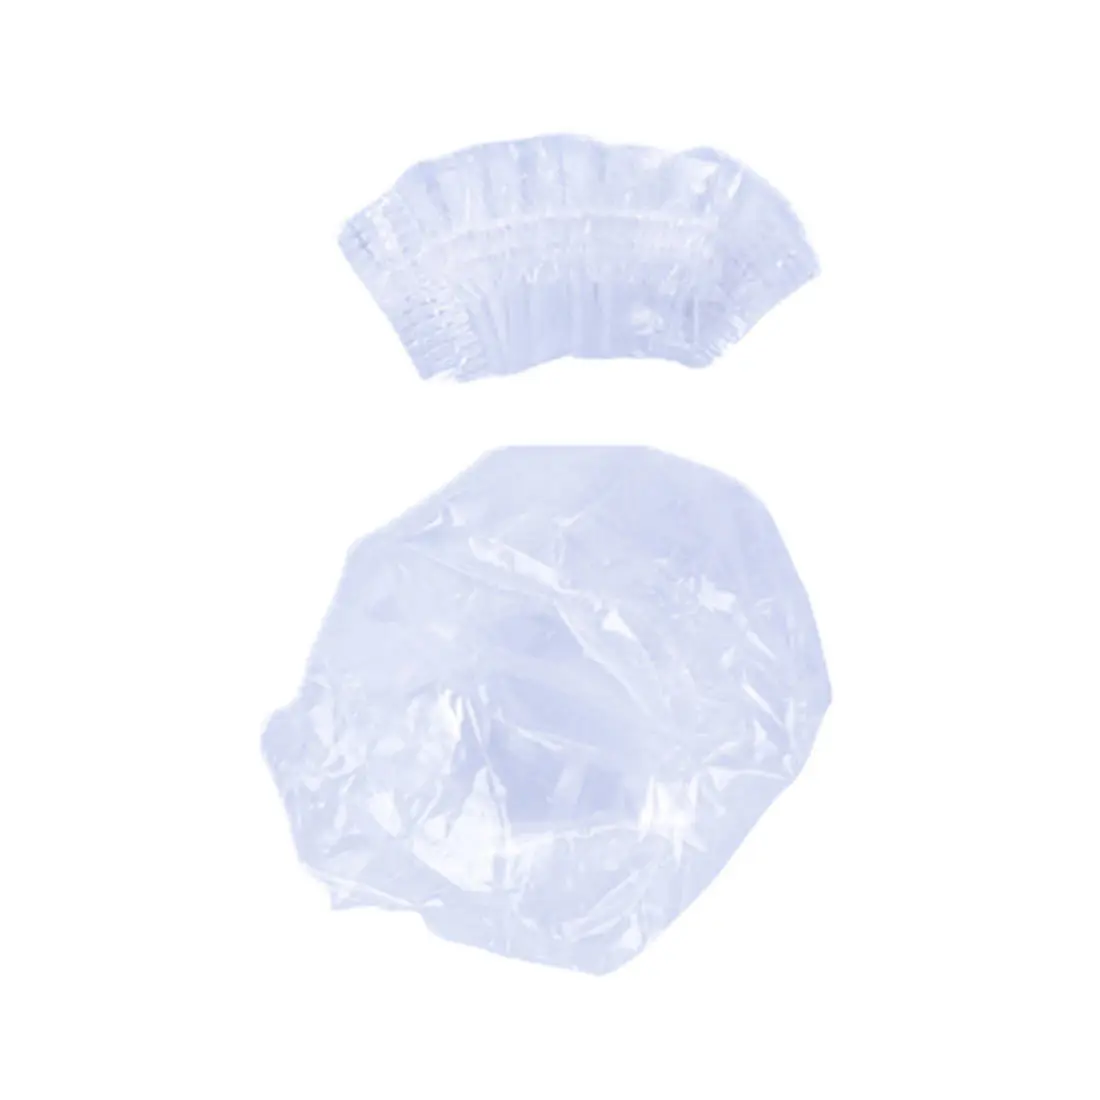 100 шт одноразовый пластиковый водонепроницаемый защитный чехол для ушей s салонный парикмахерский краситель защита для защиты душевой колпачок инструмент